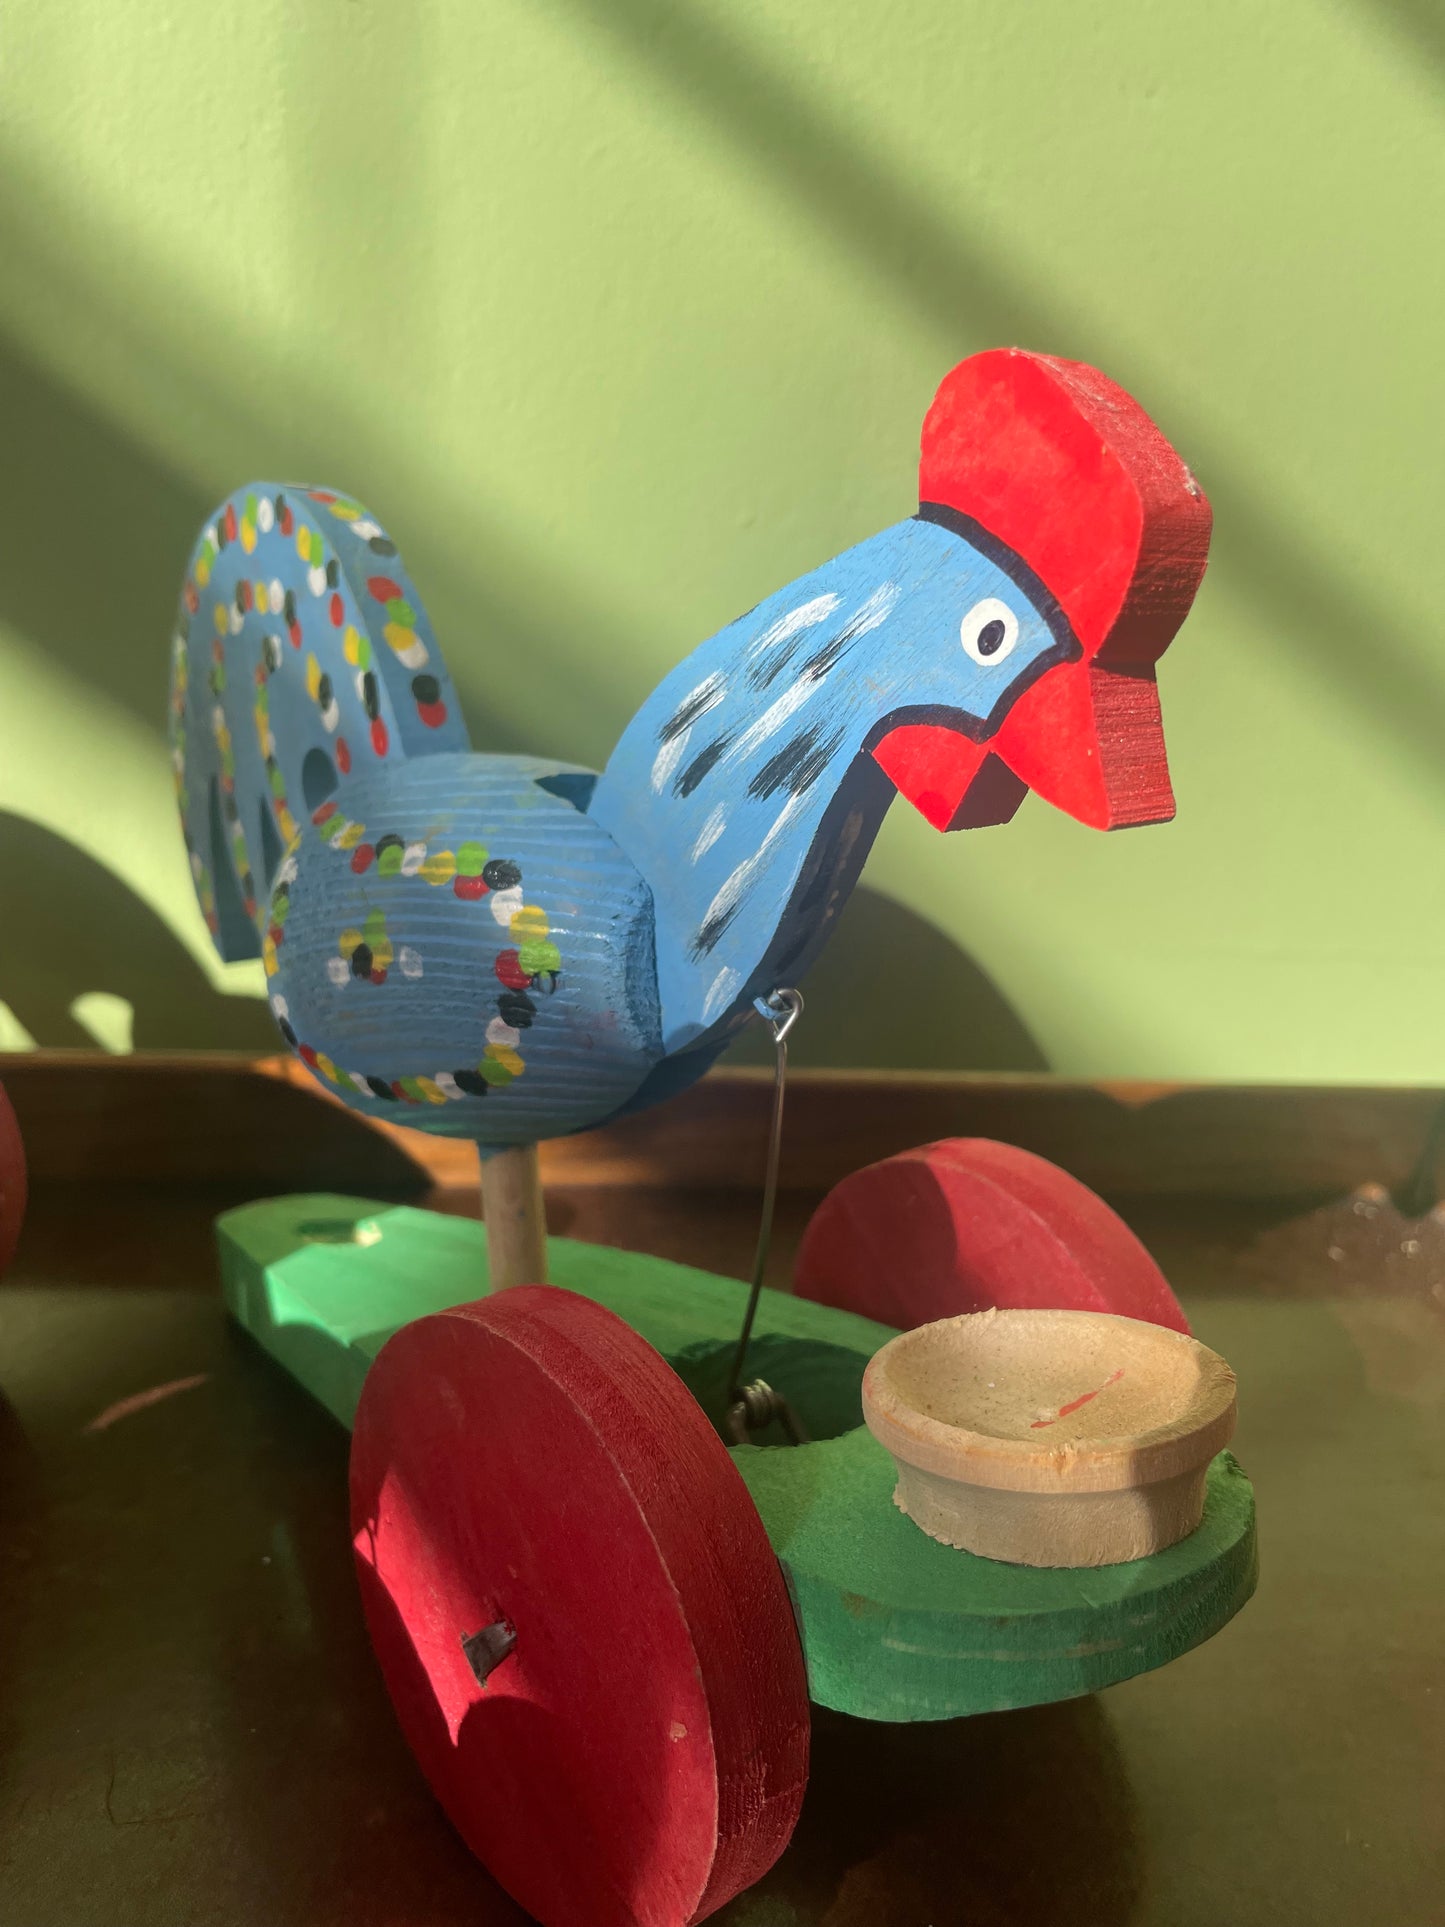 Chicken Push In Toy by Ryszard